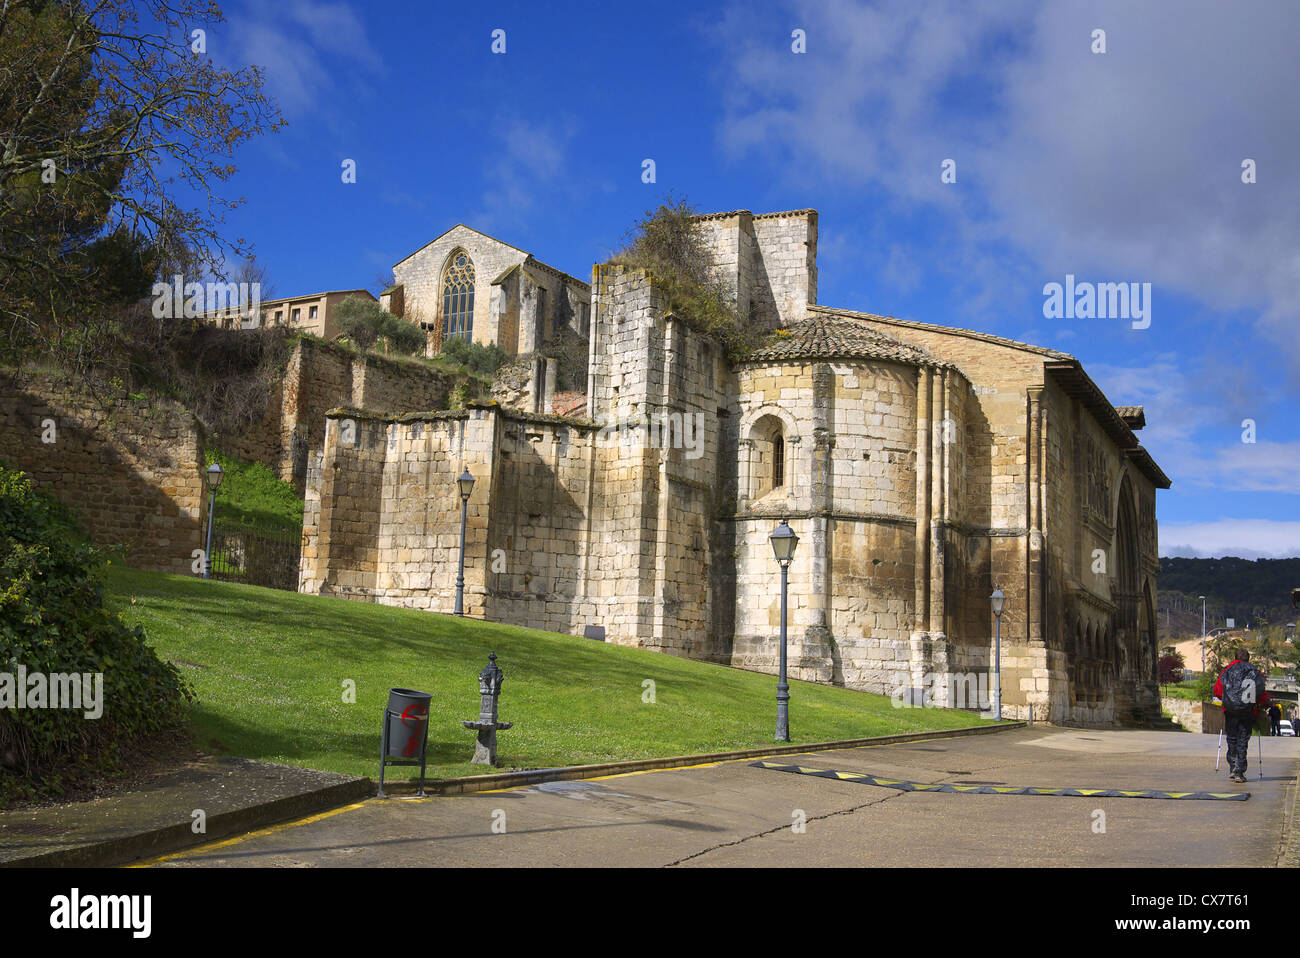 The church of Santo Domingo in Estella (Lizarra), Spain. Stock Photo